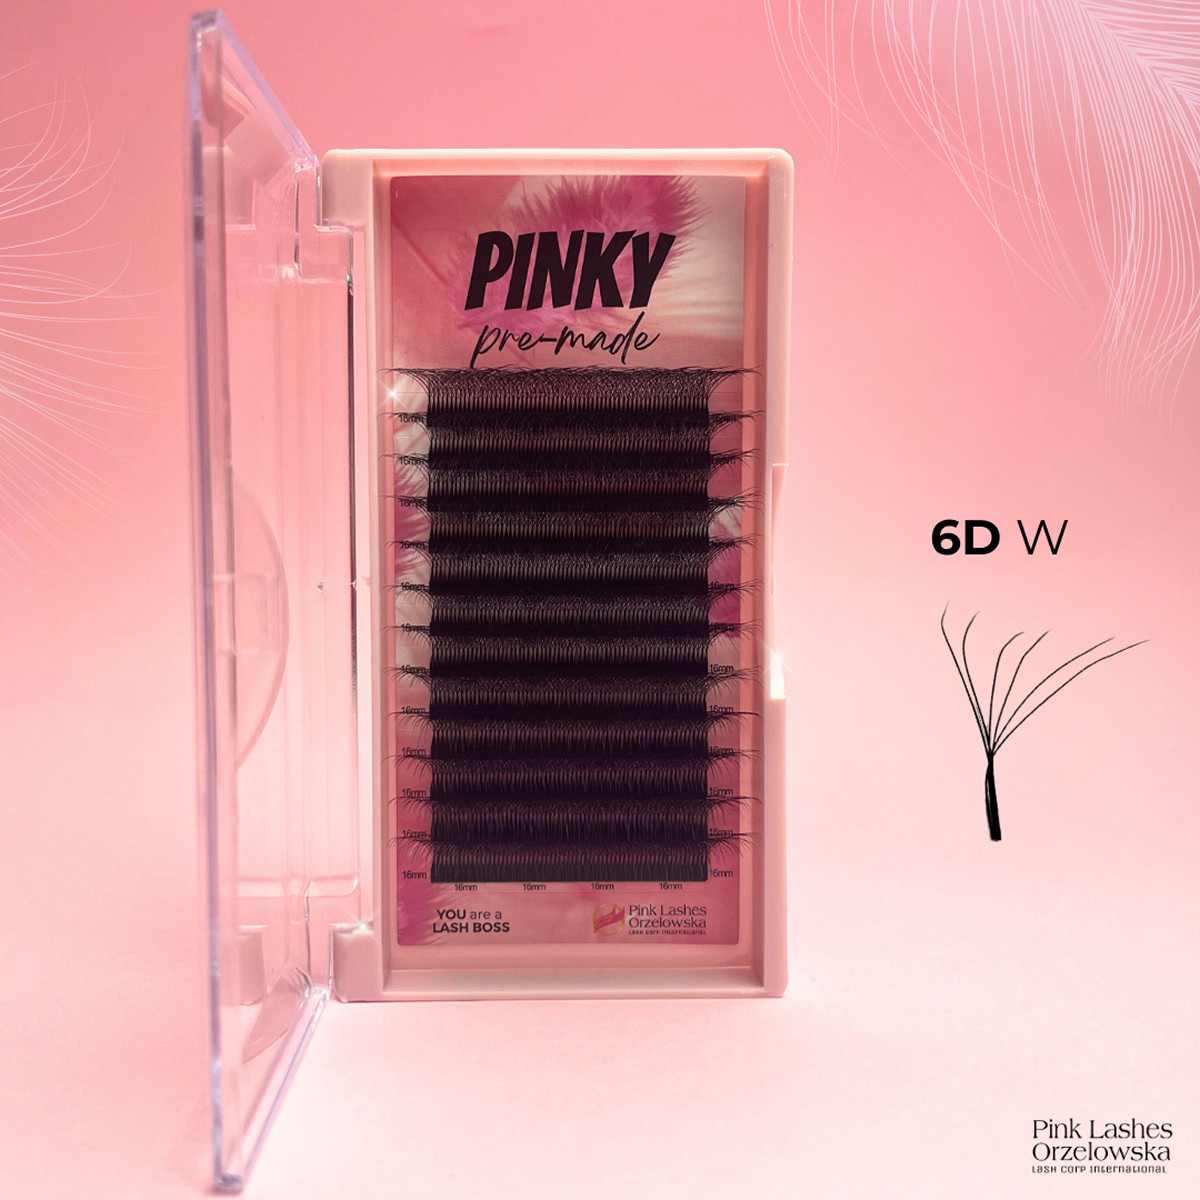 6D W PINKY, Curl D, premade - ciglia finte pronte all'uso, volume rapido